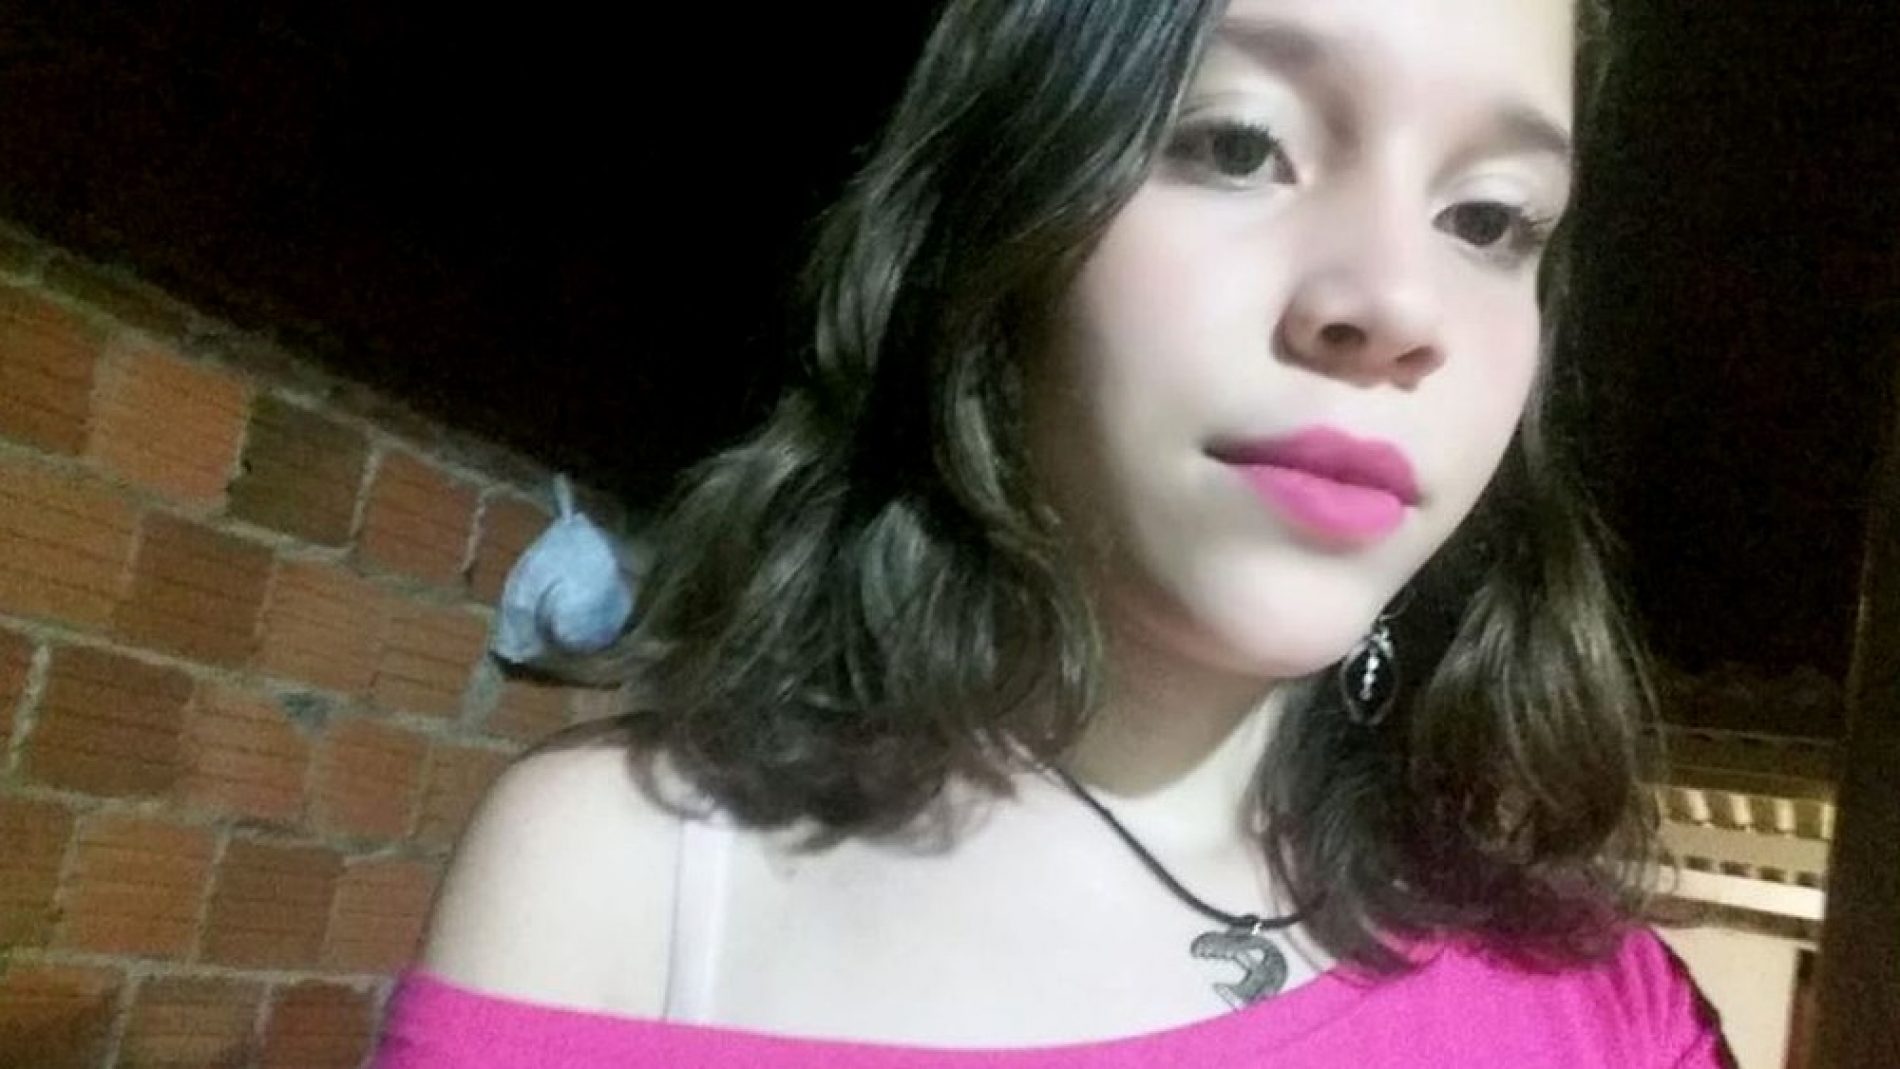 BEBEDOURO: Adolescente de 14 anos é baleada após negar namoro a jovem, diz família